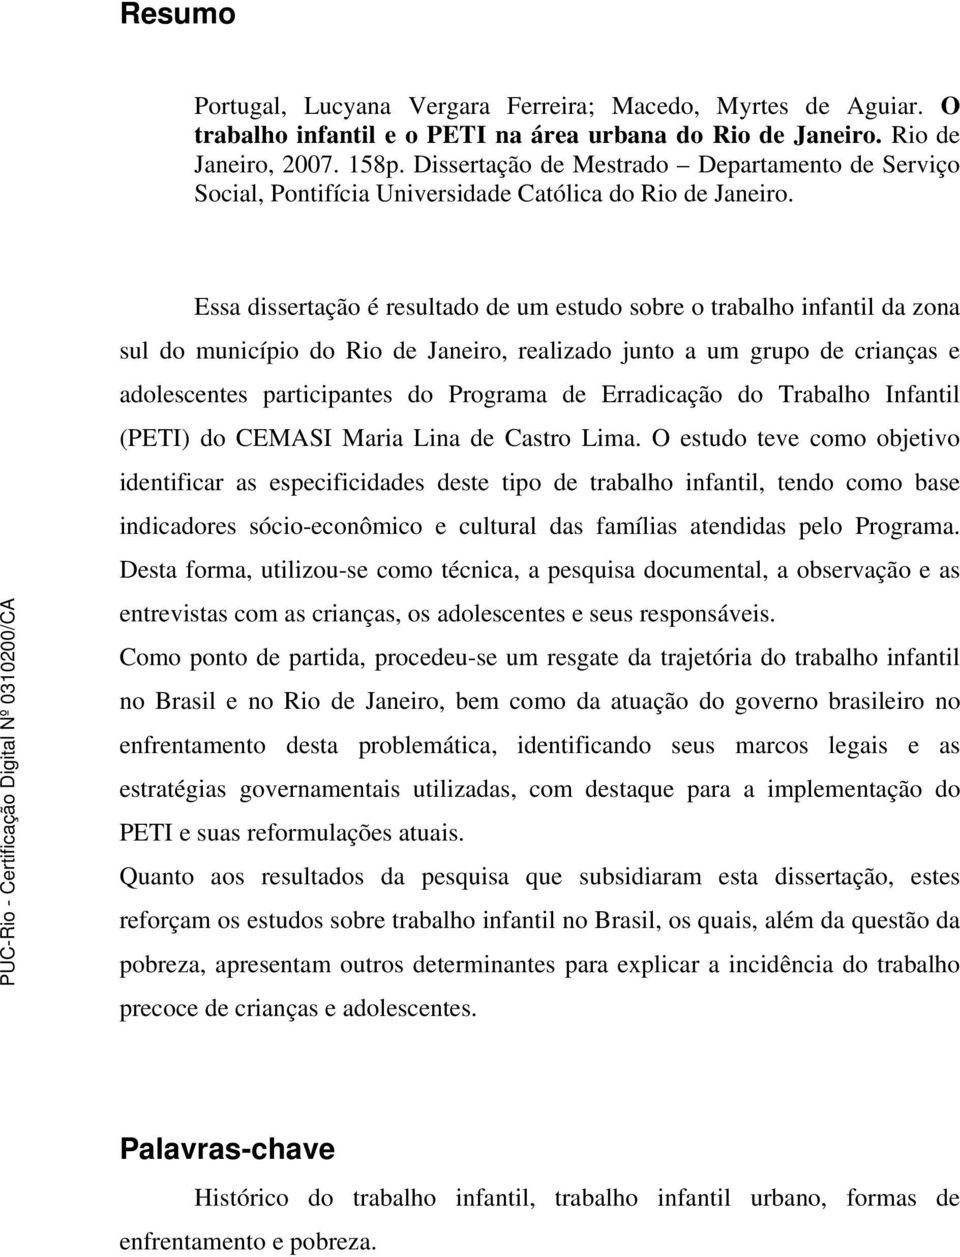 Essa dissertação é resultado de um estudo sobre o trabalho infantil da zona sul do município do Rio de Janeiro, realizado junto a um grupo de crianças e adolescentes participantes do Programa de